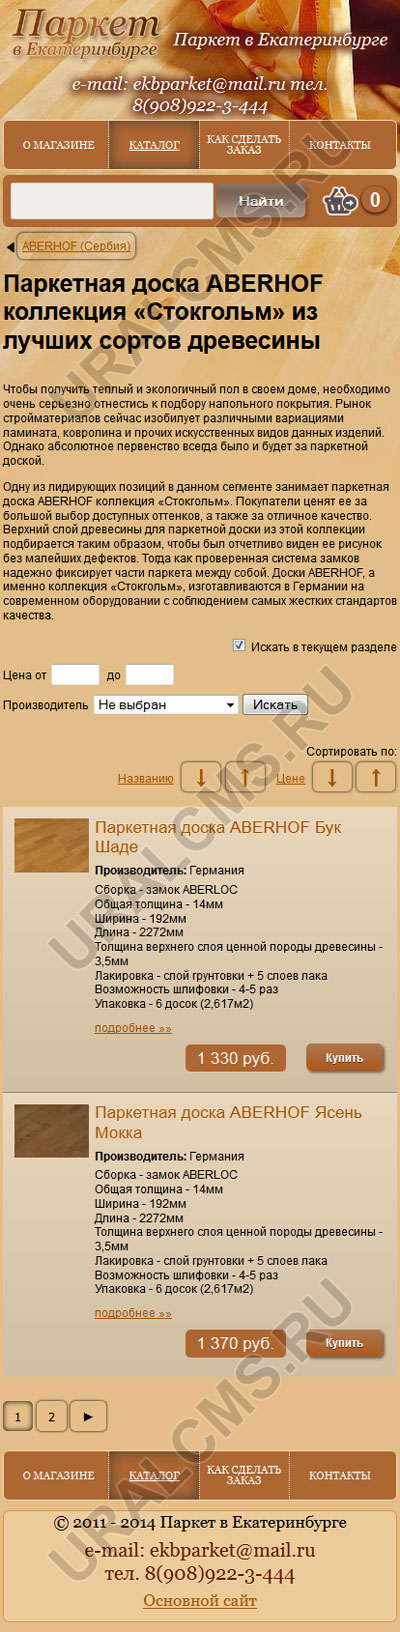 Мобильная версия сайта «Паркет в Екатеринбурге» - список позиций в категории